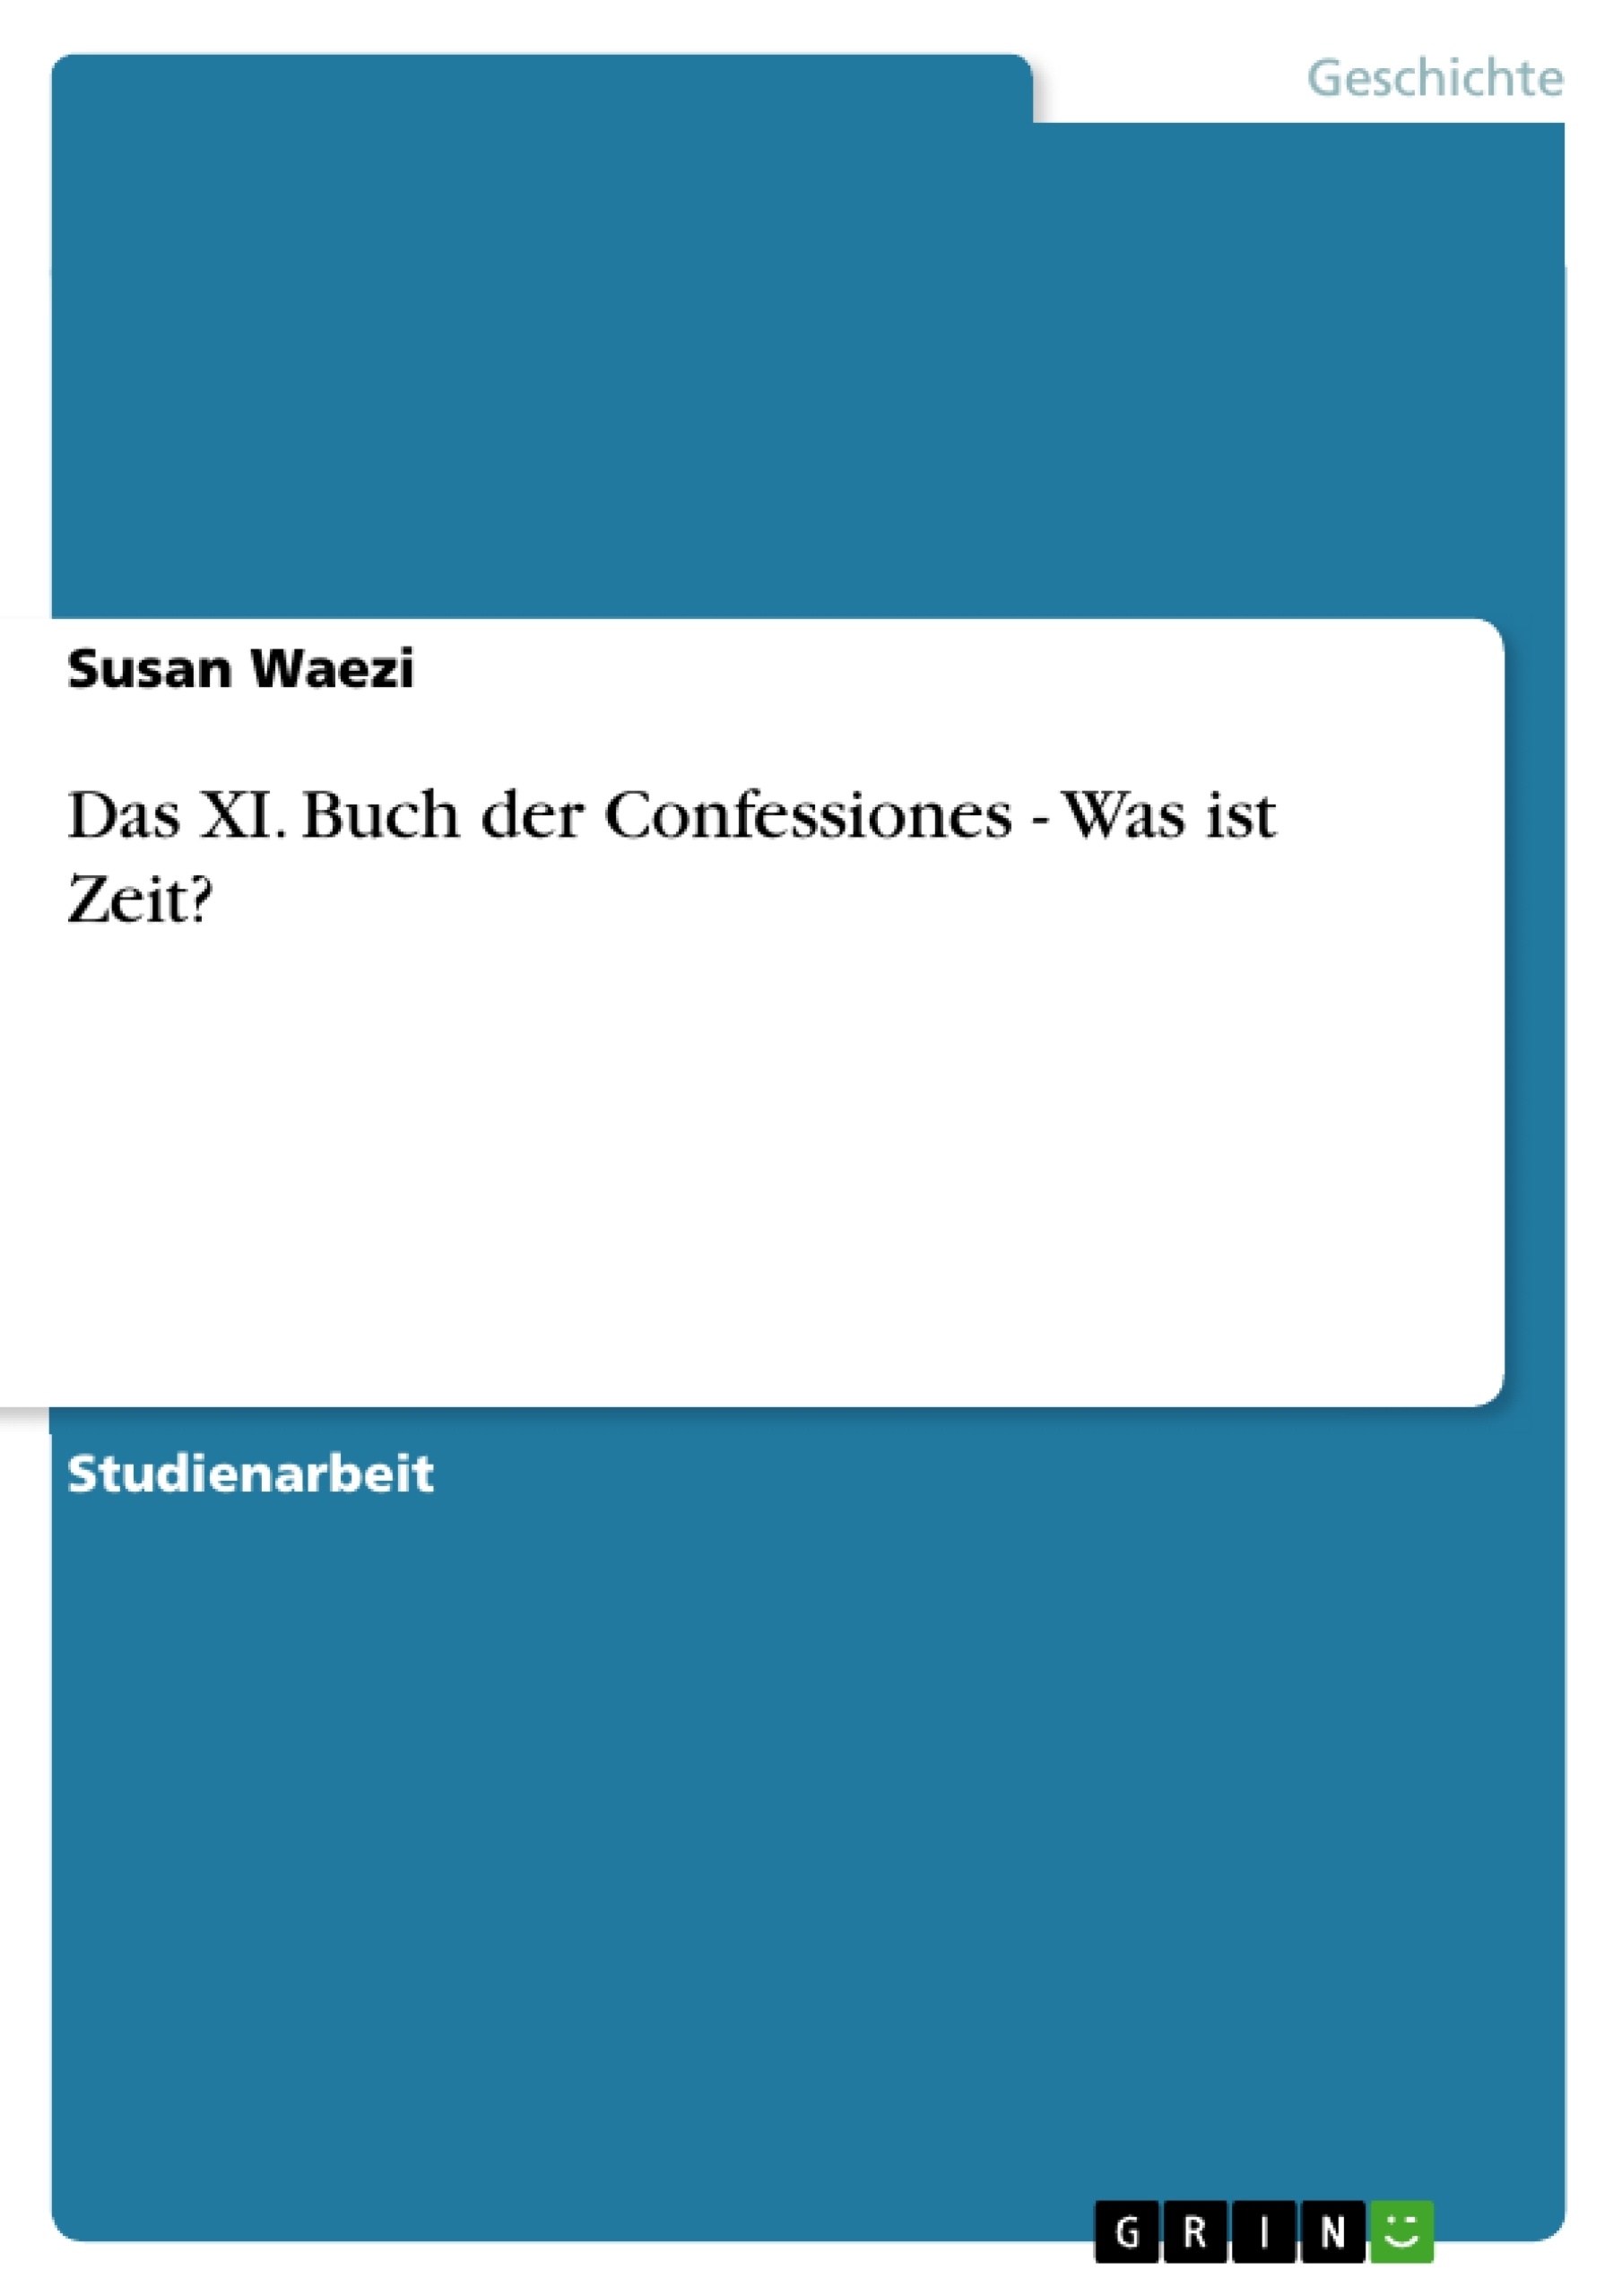 Titre: Das XI. Buch der Confessiones - Was ist Zeit?